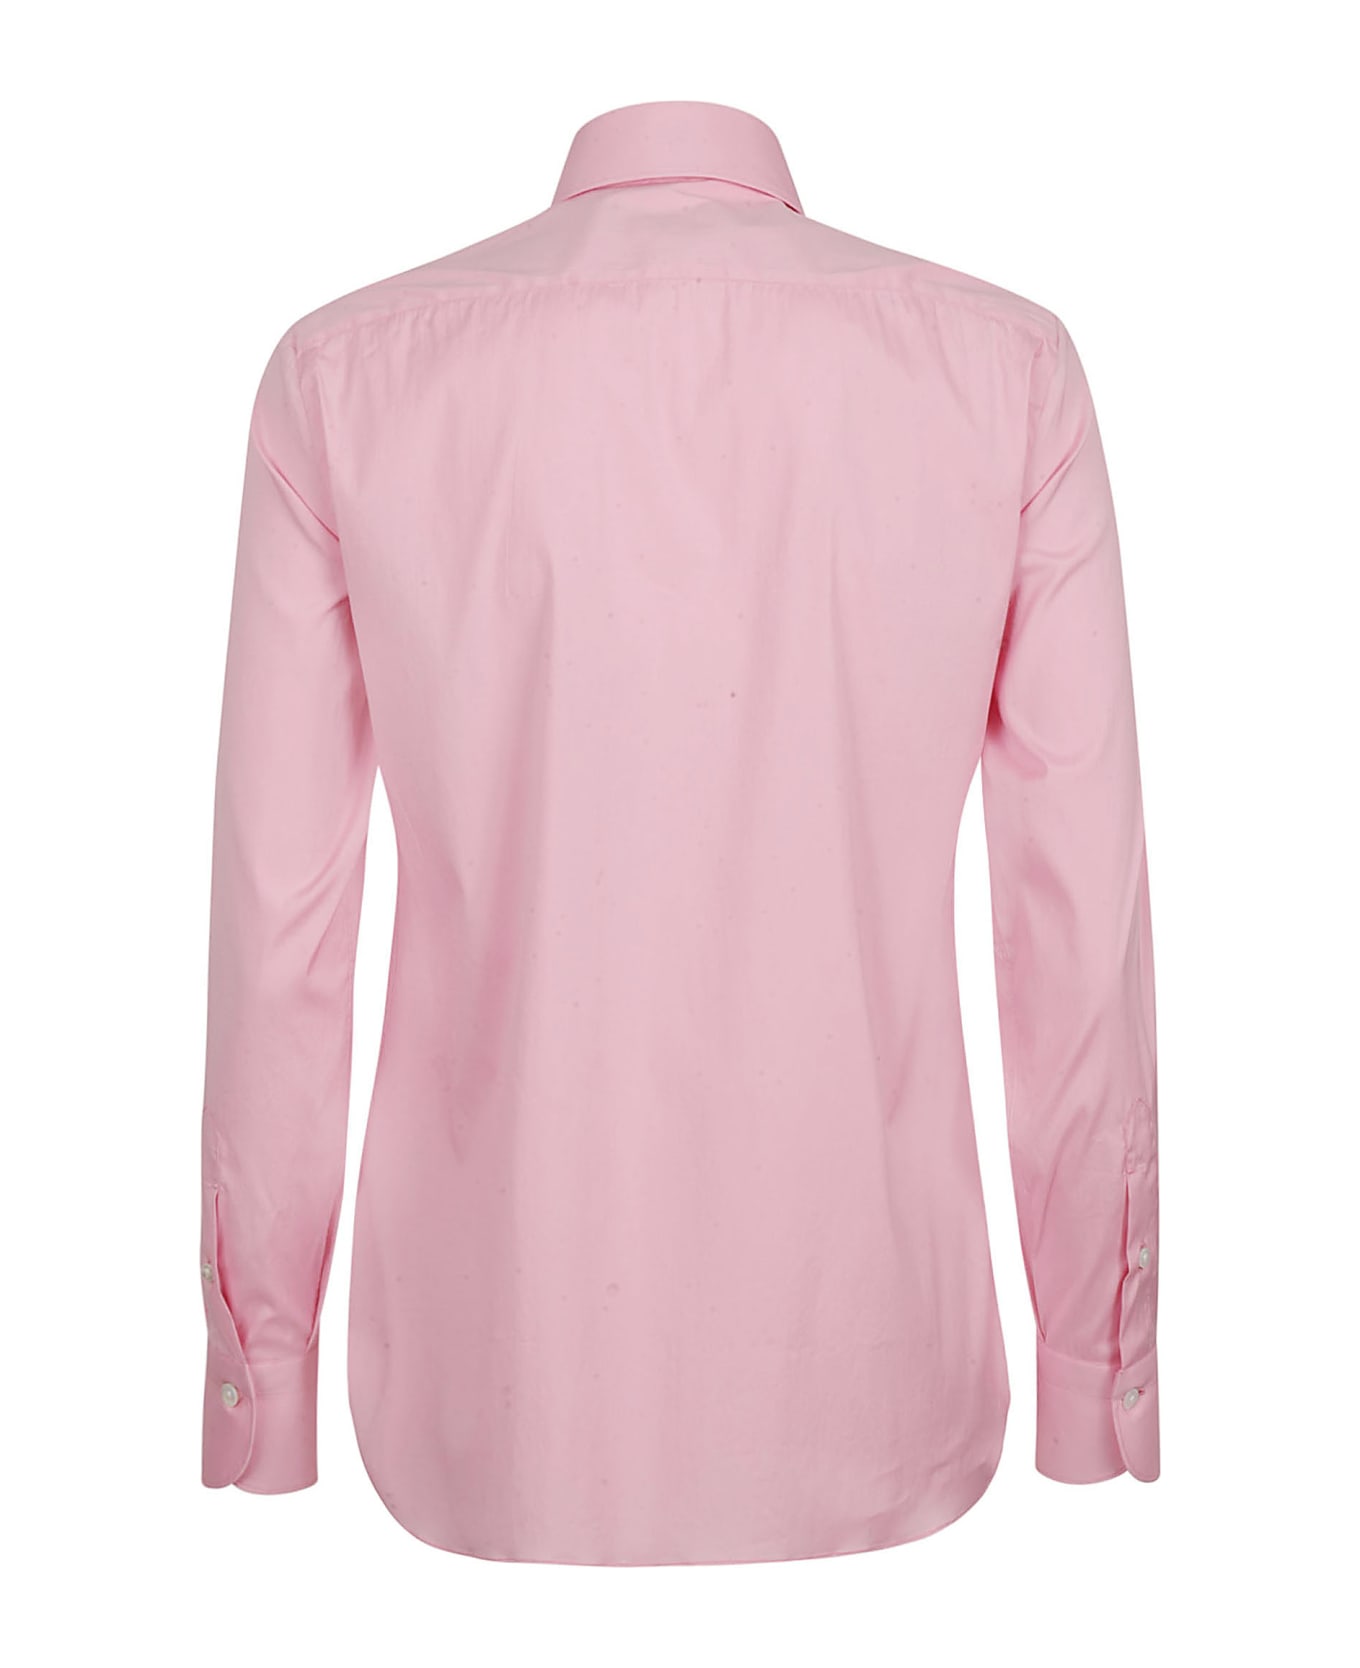 Finamore Shirts Pink - Pink シャツ